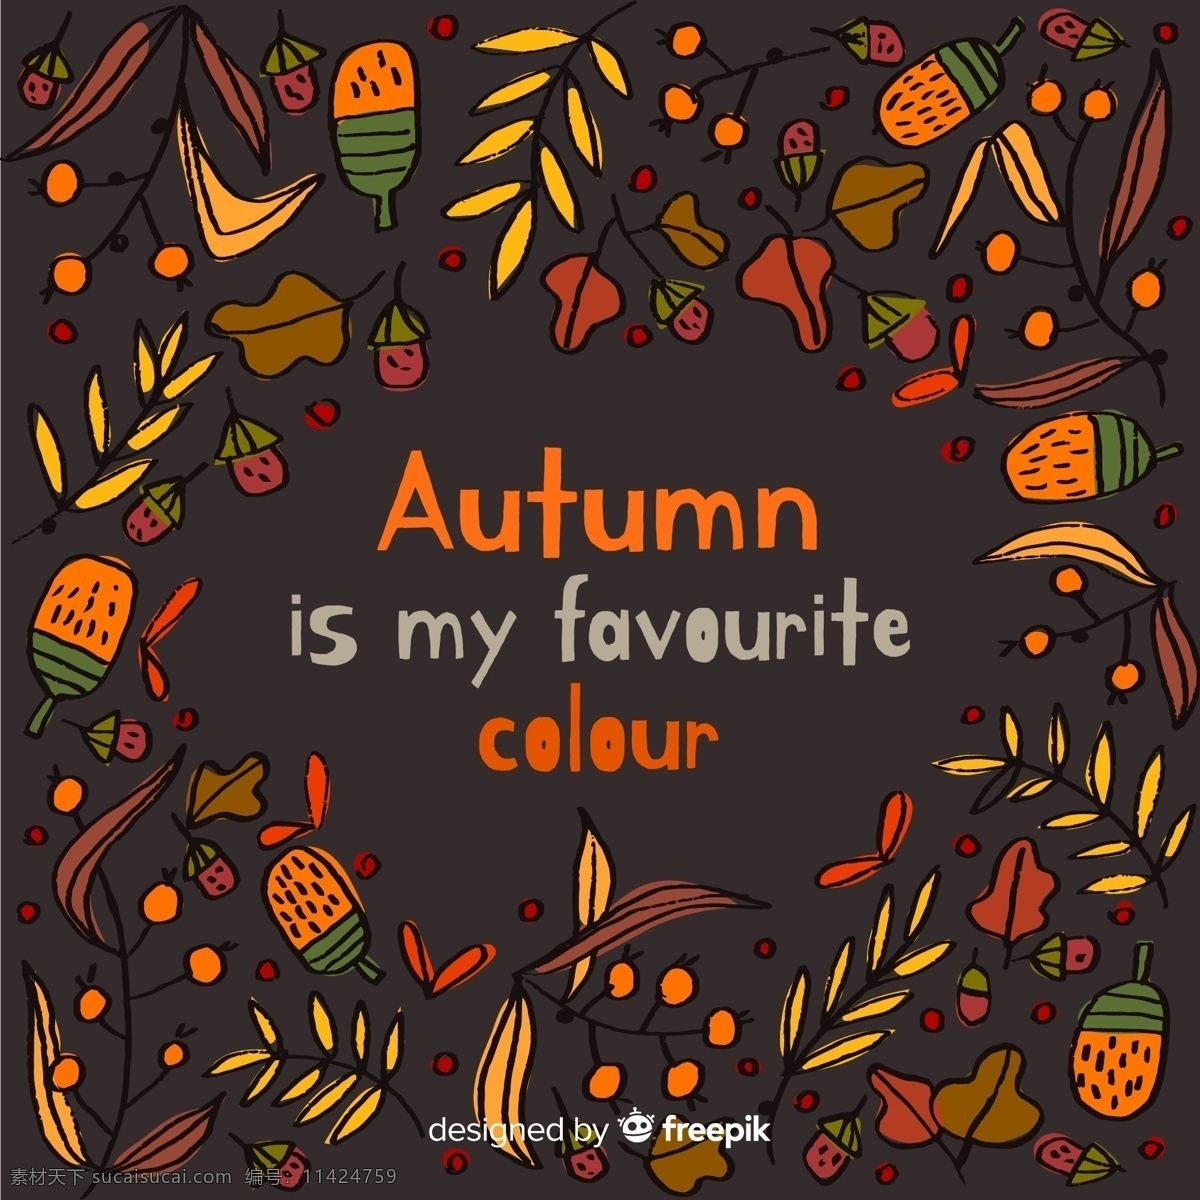 手绘秋季叶子 彩绘秋季元素 矢量素材 橡子 树叶 浆果 落叶 autumn 彩绘 秋季 标志图标 其他图标